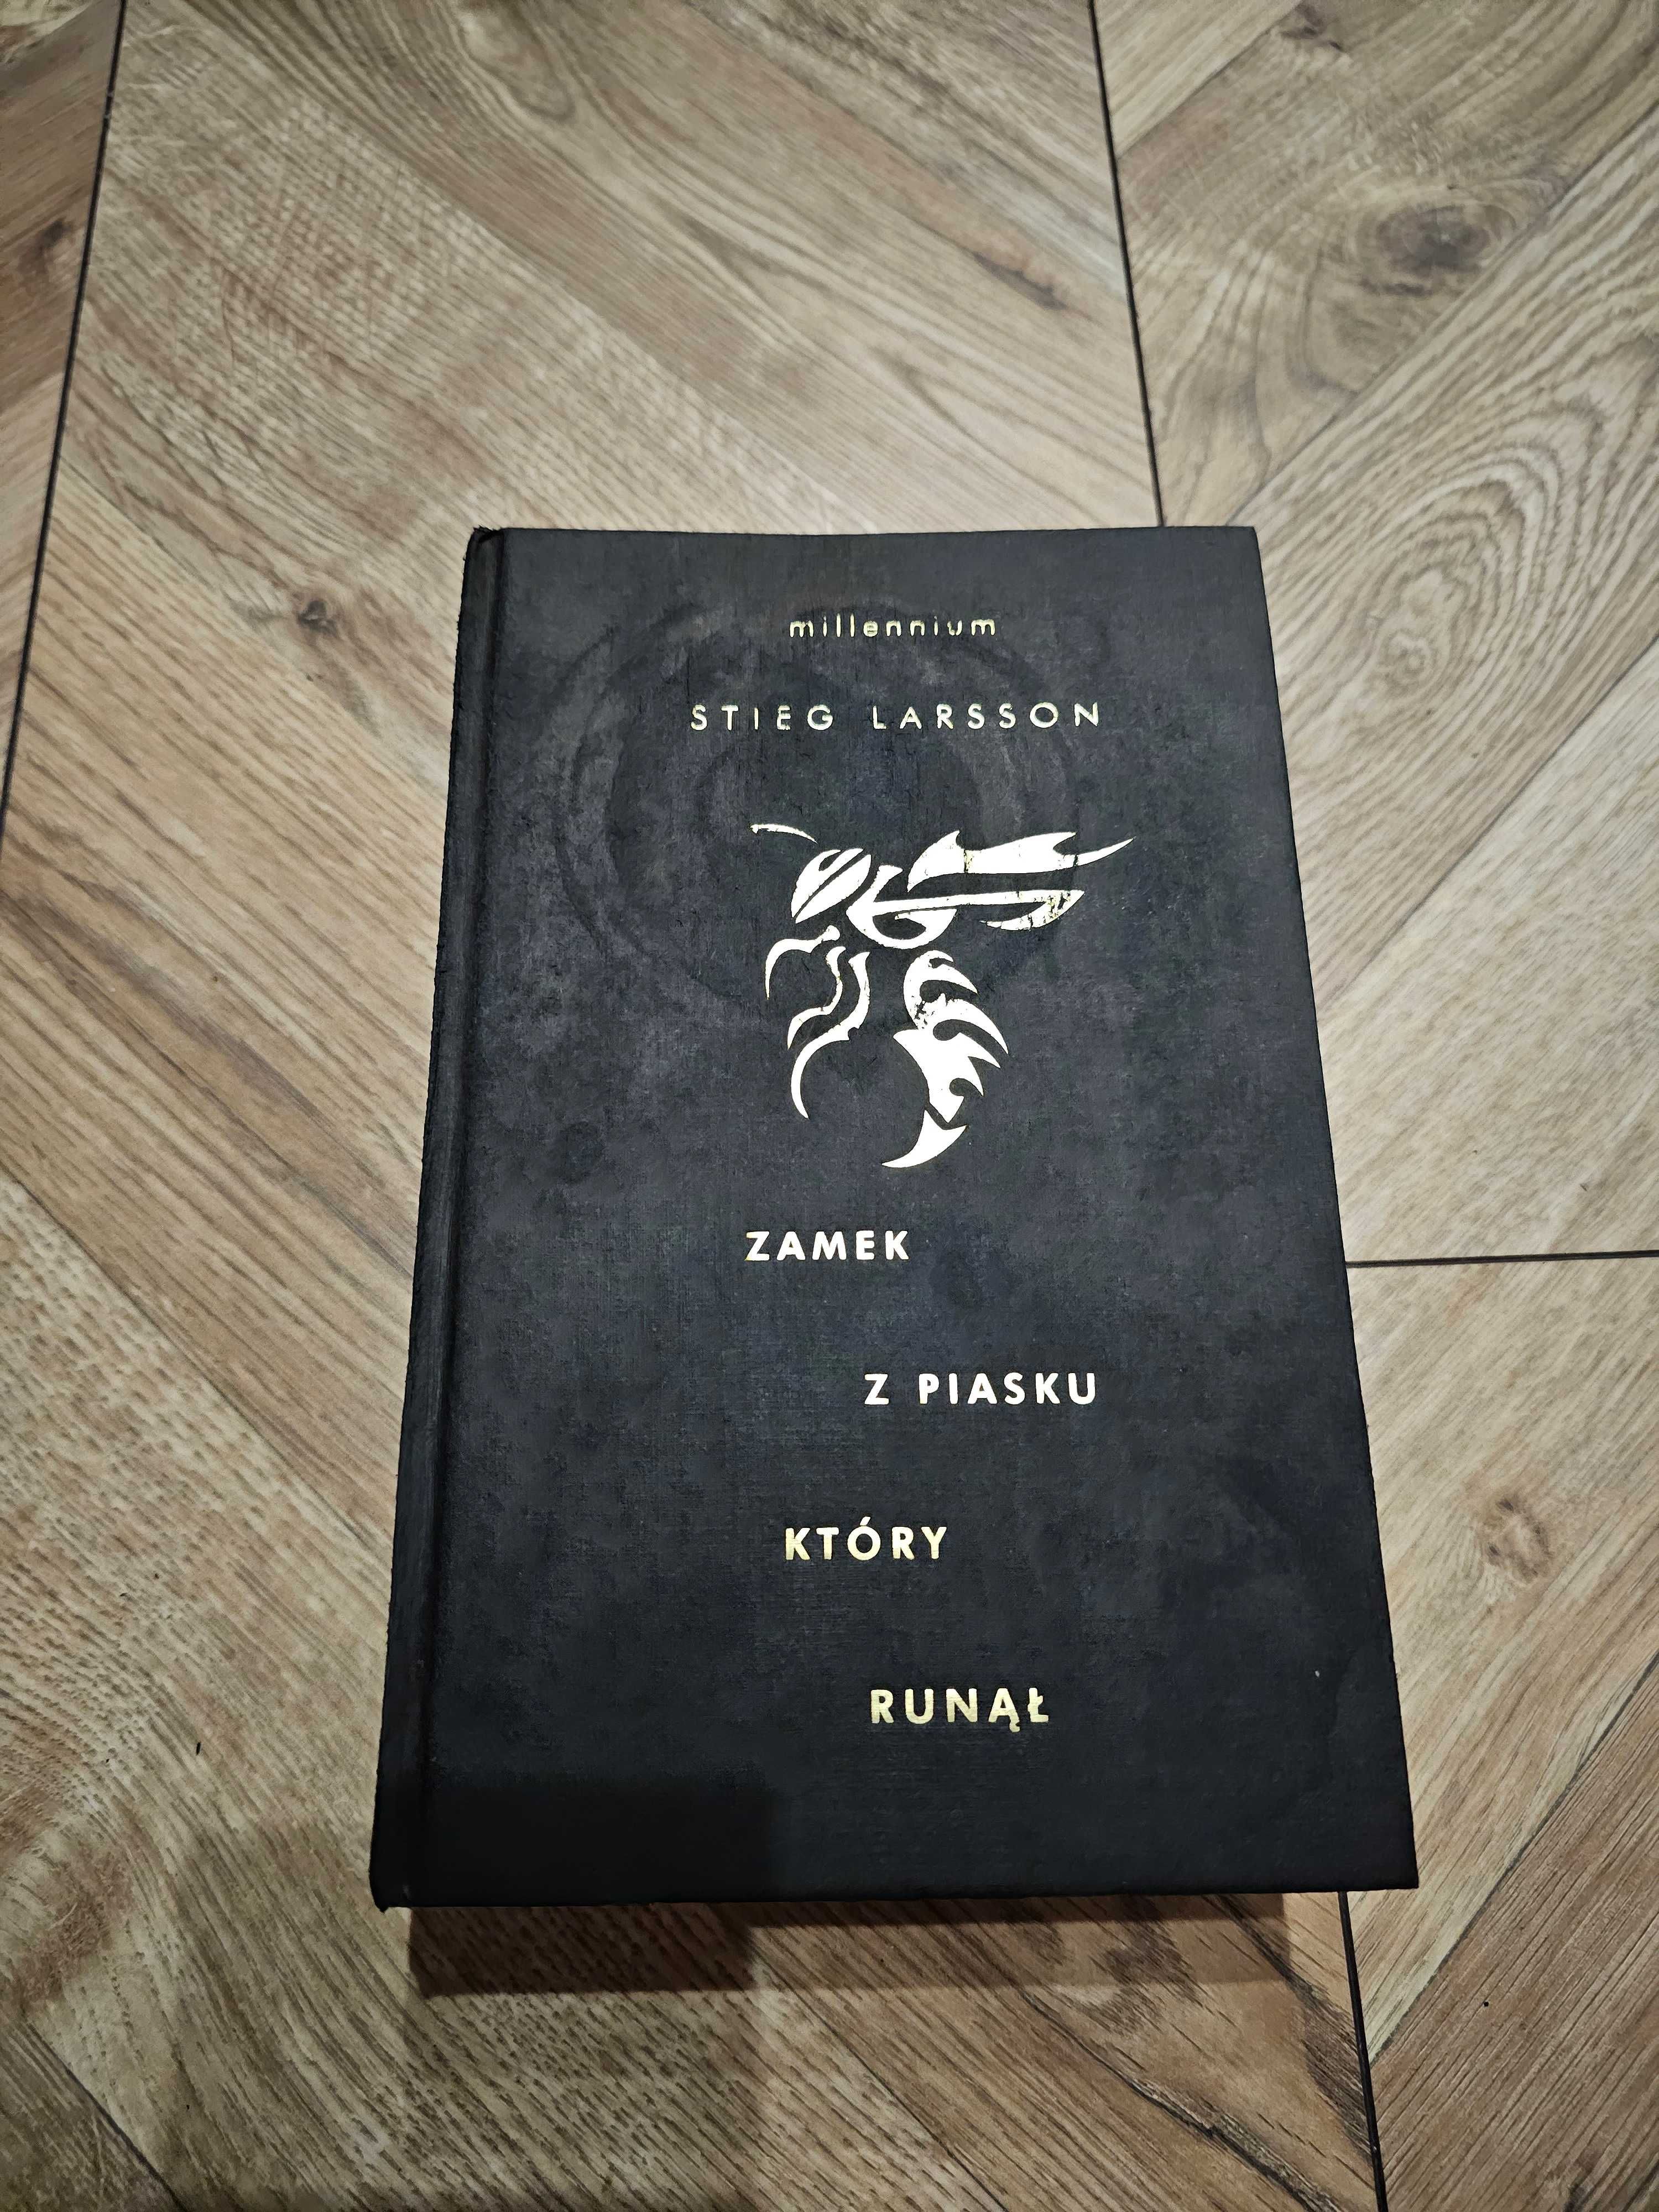 Trylogia Millennium - Stieg Larsson - wydanie kolekcjonerskie